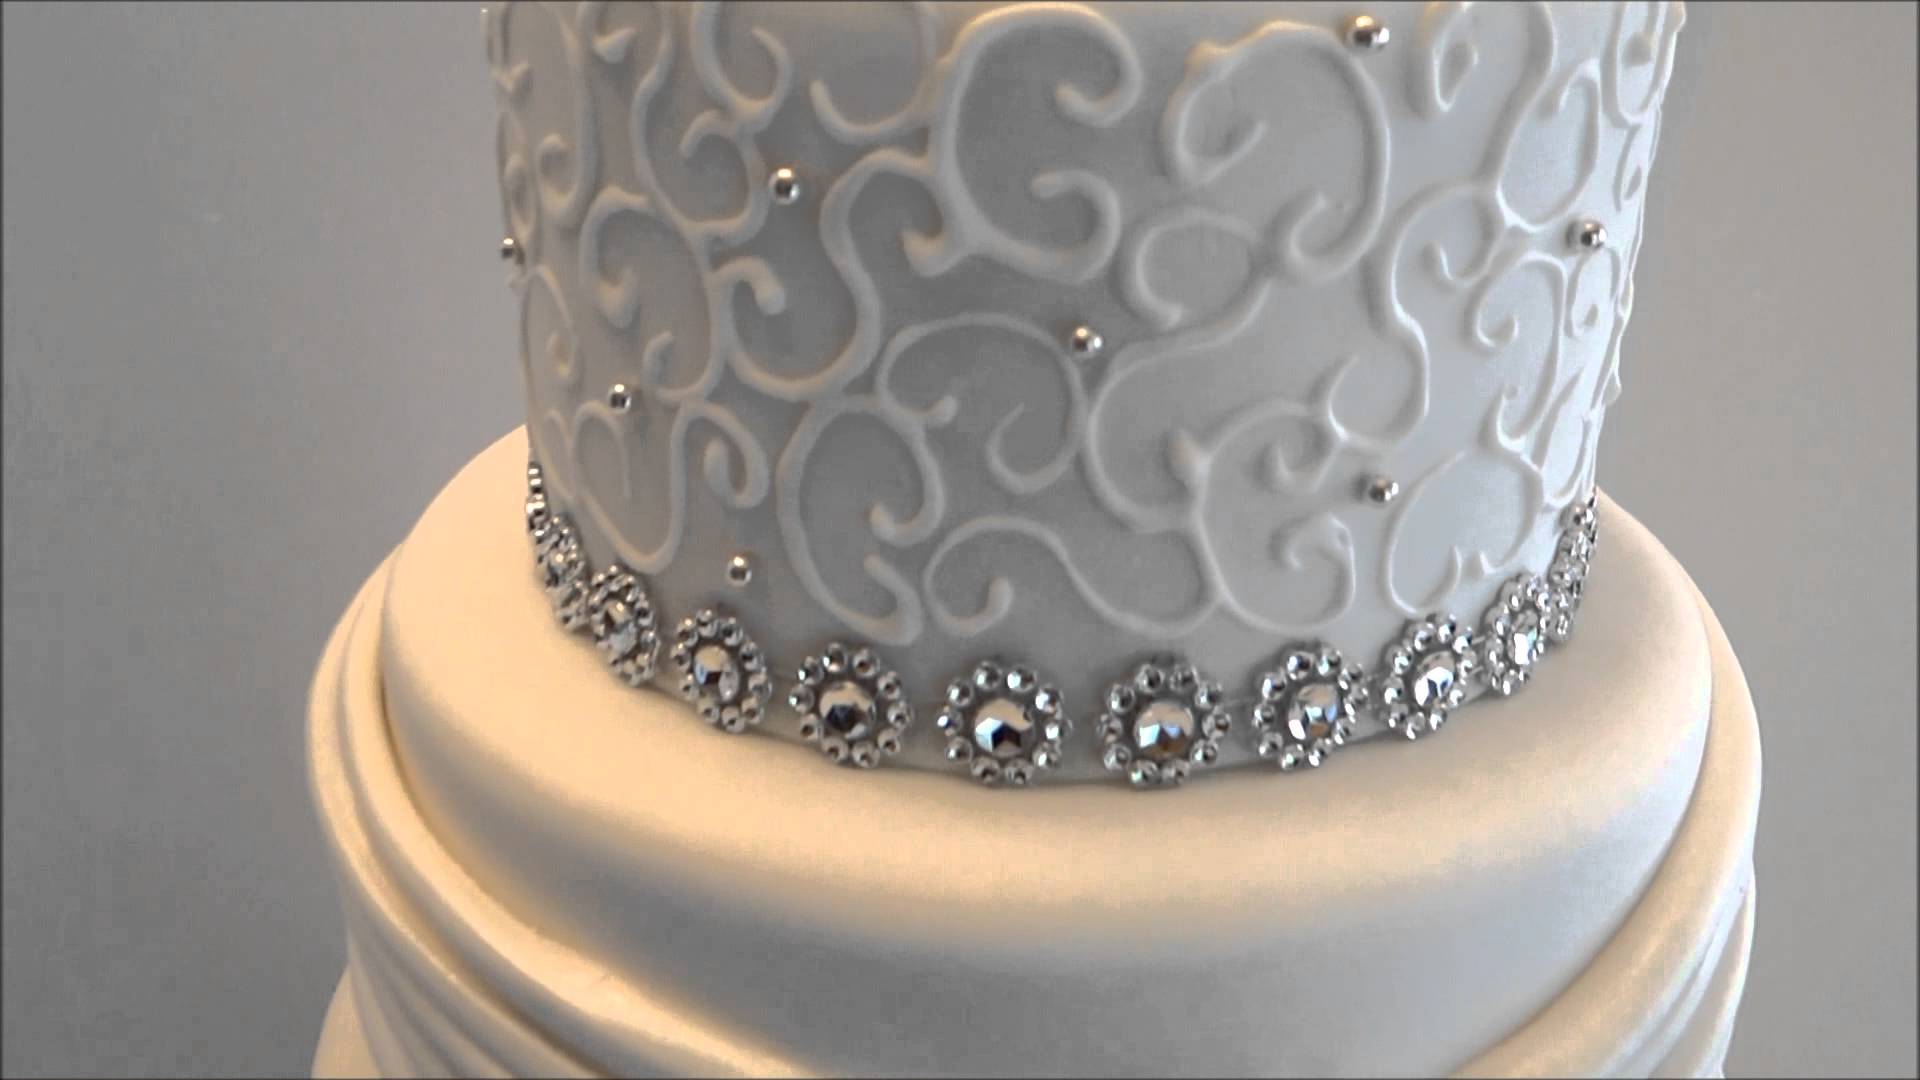 Elegant Wedding Cakes with Bling